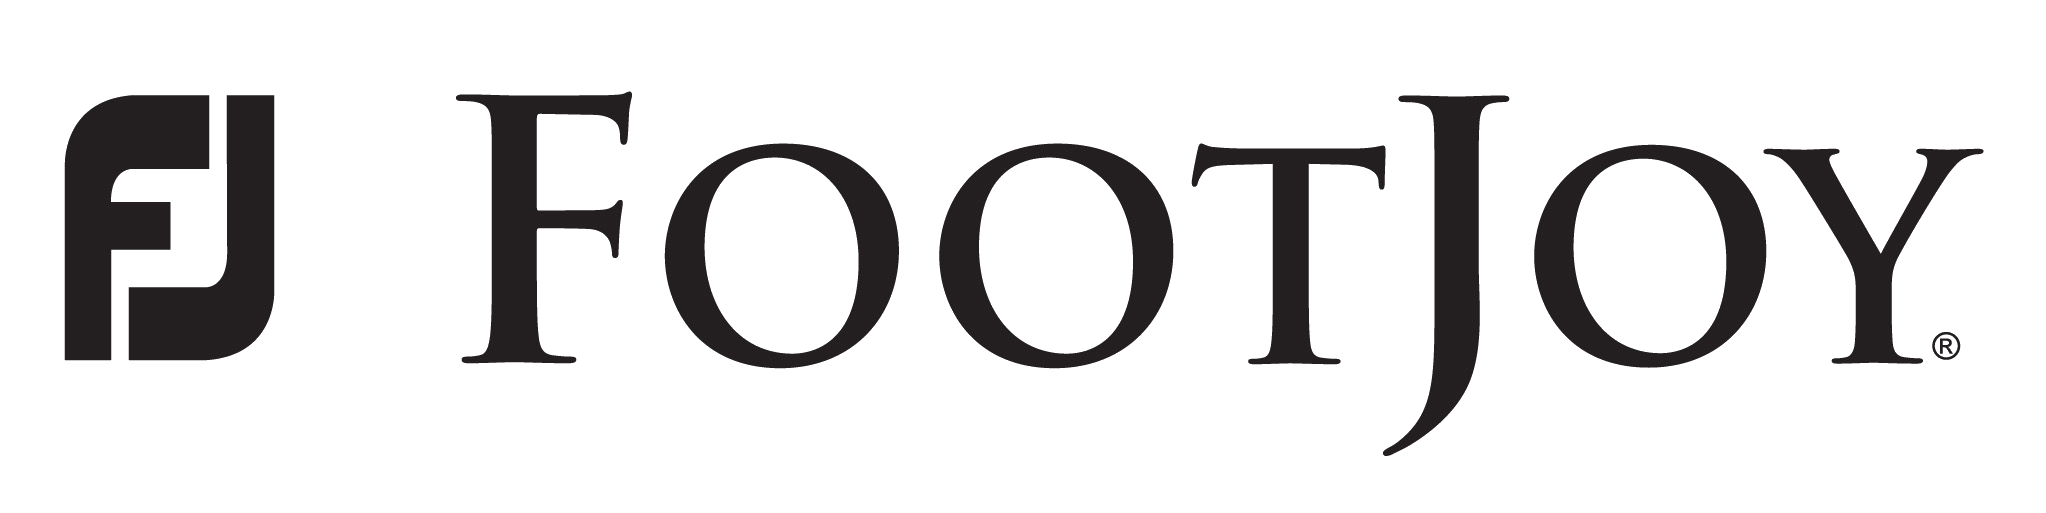 Footjoy-Logo.png